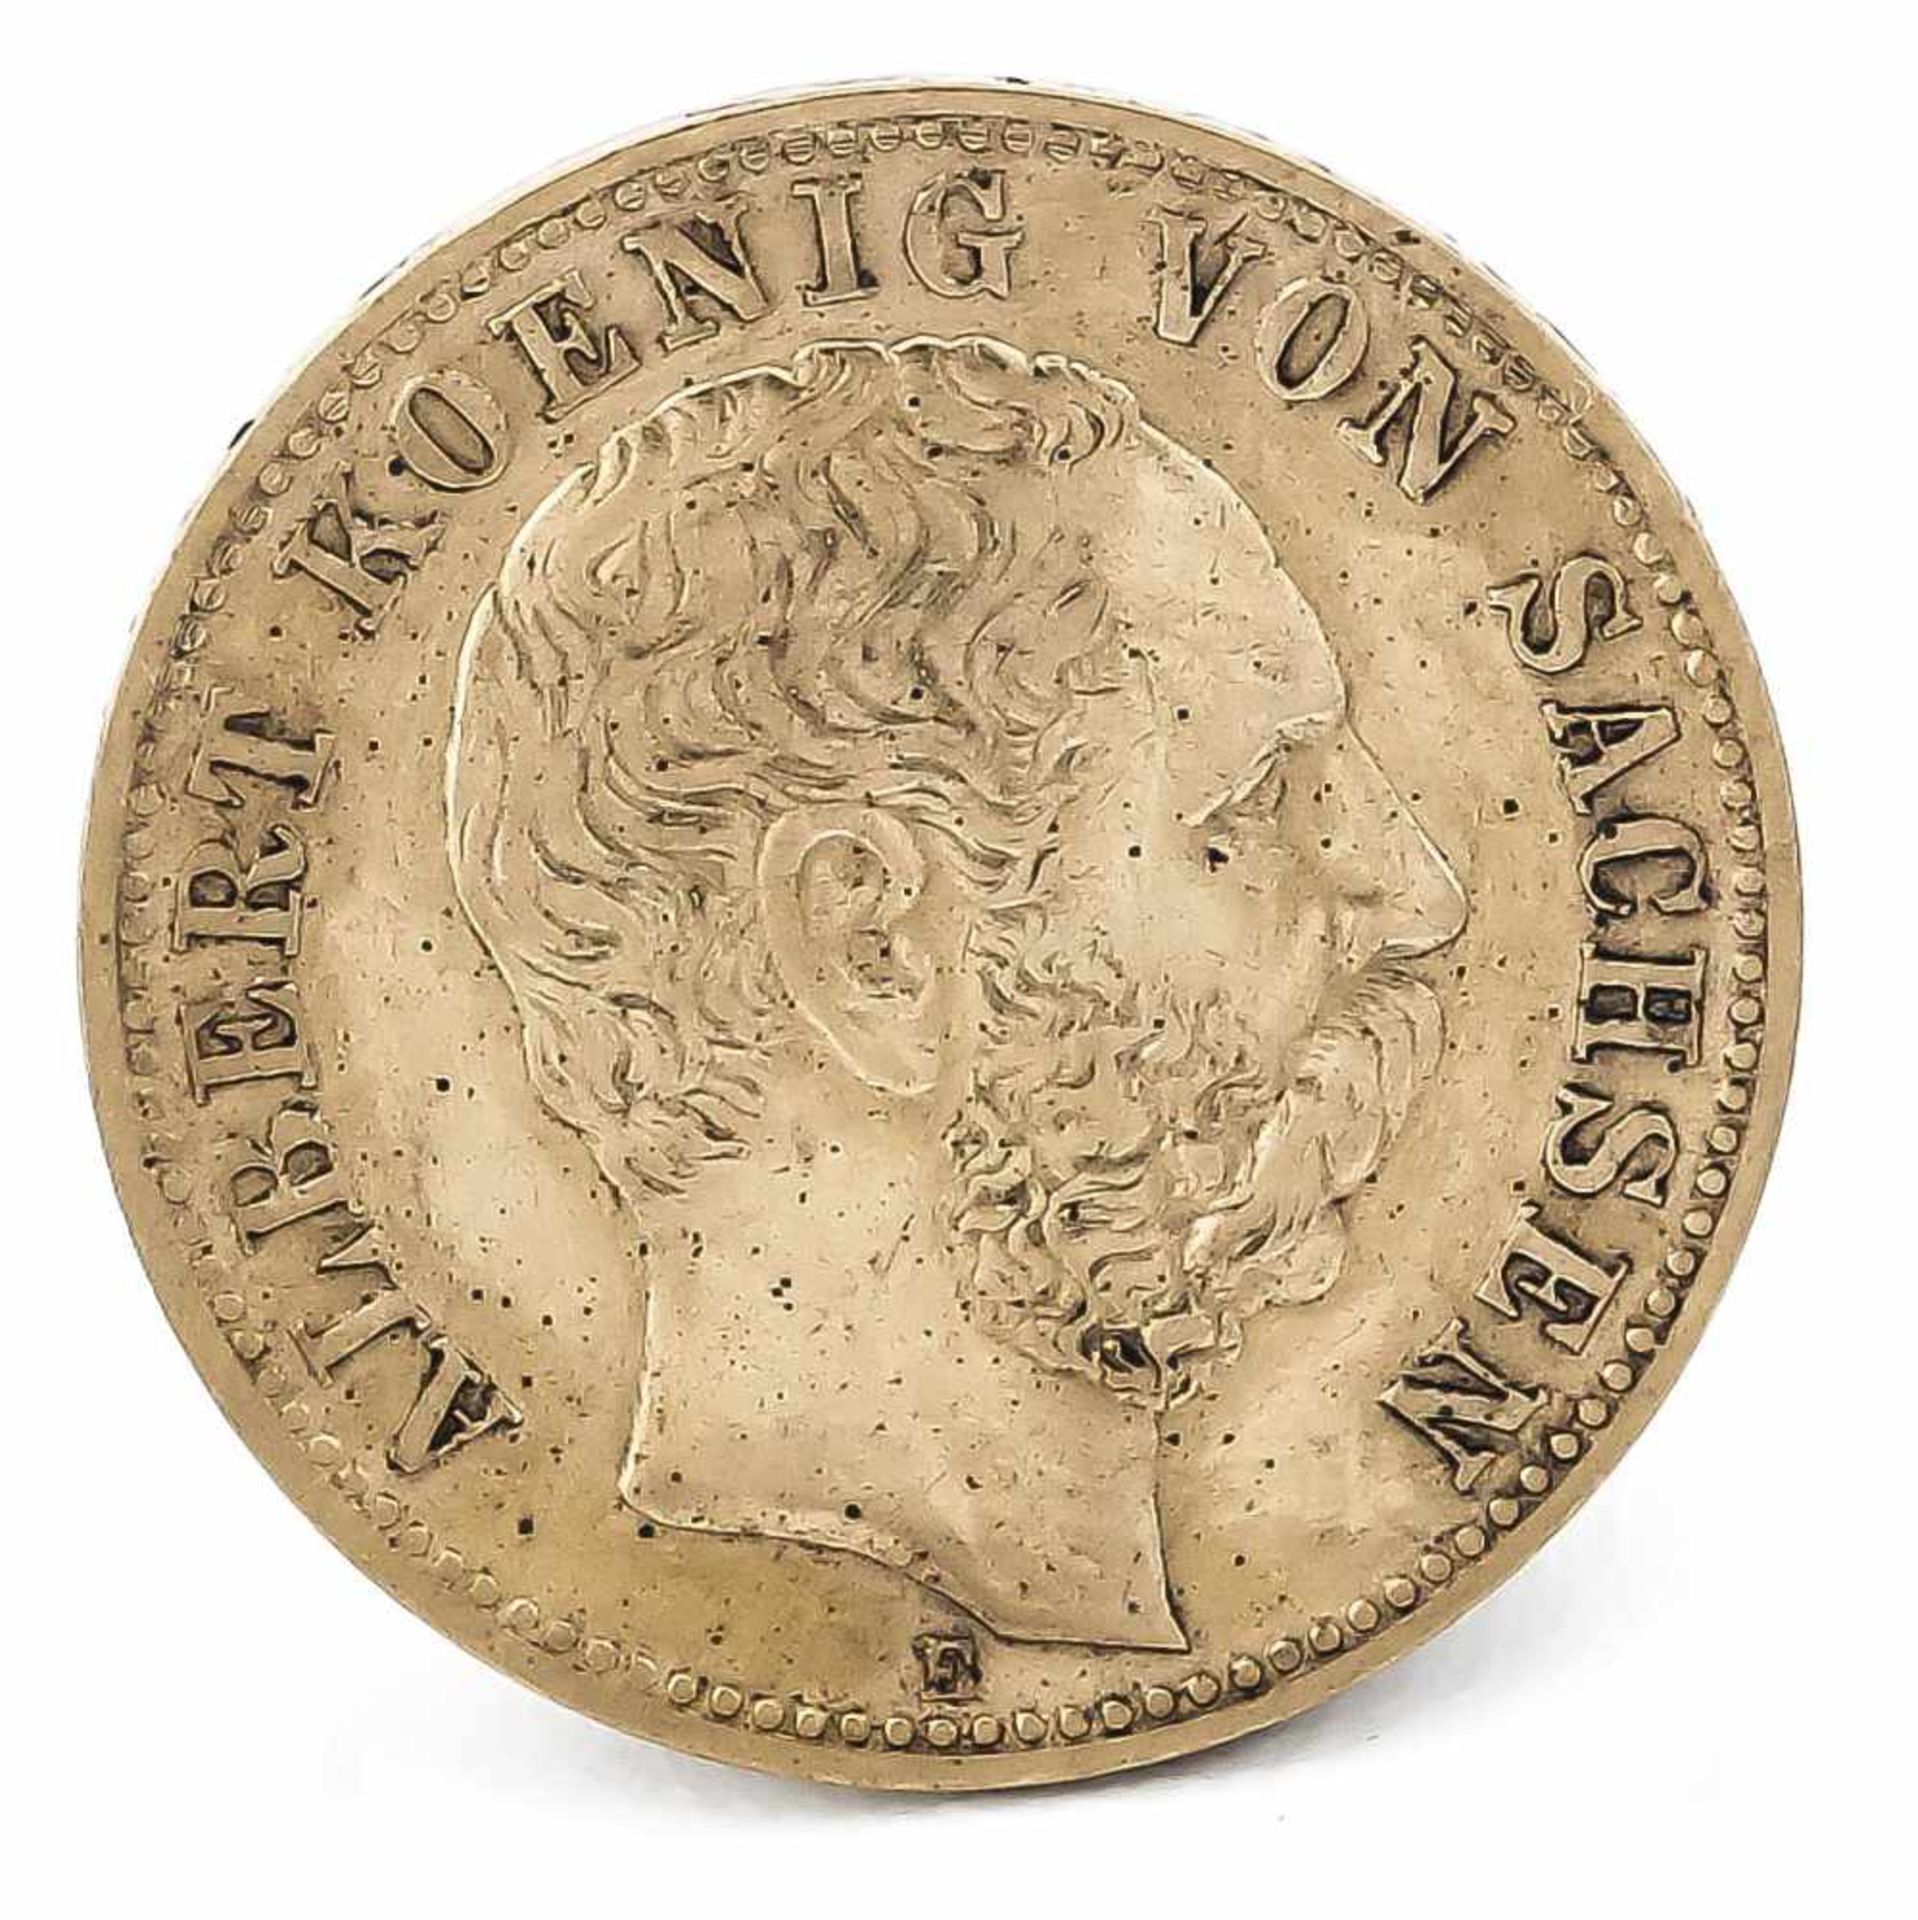 10 Mark, Sachsen, Albert König von Sachsen, 1879 E, in ss